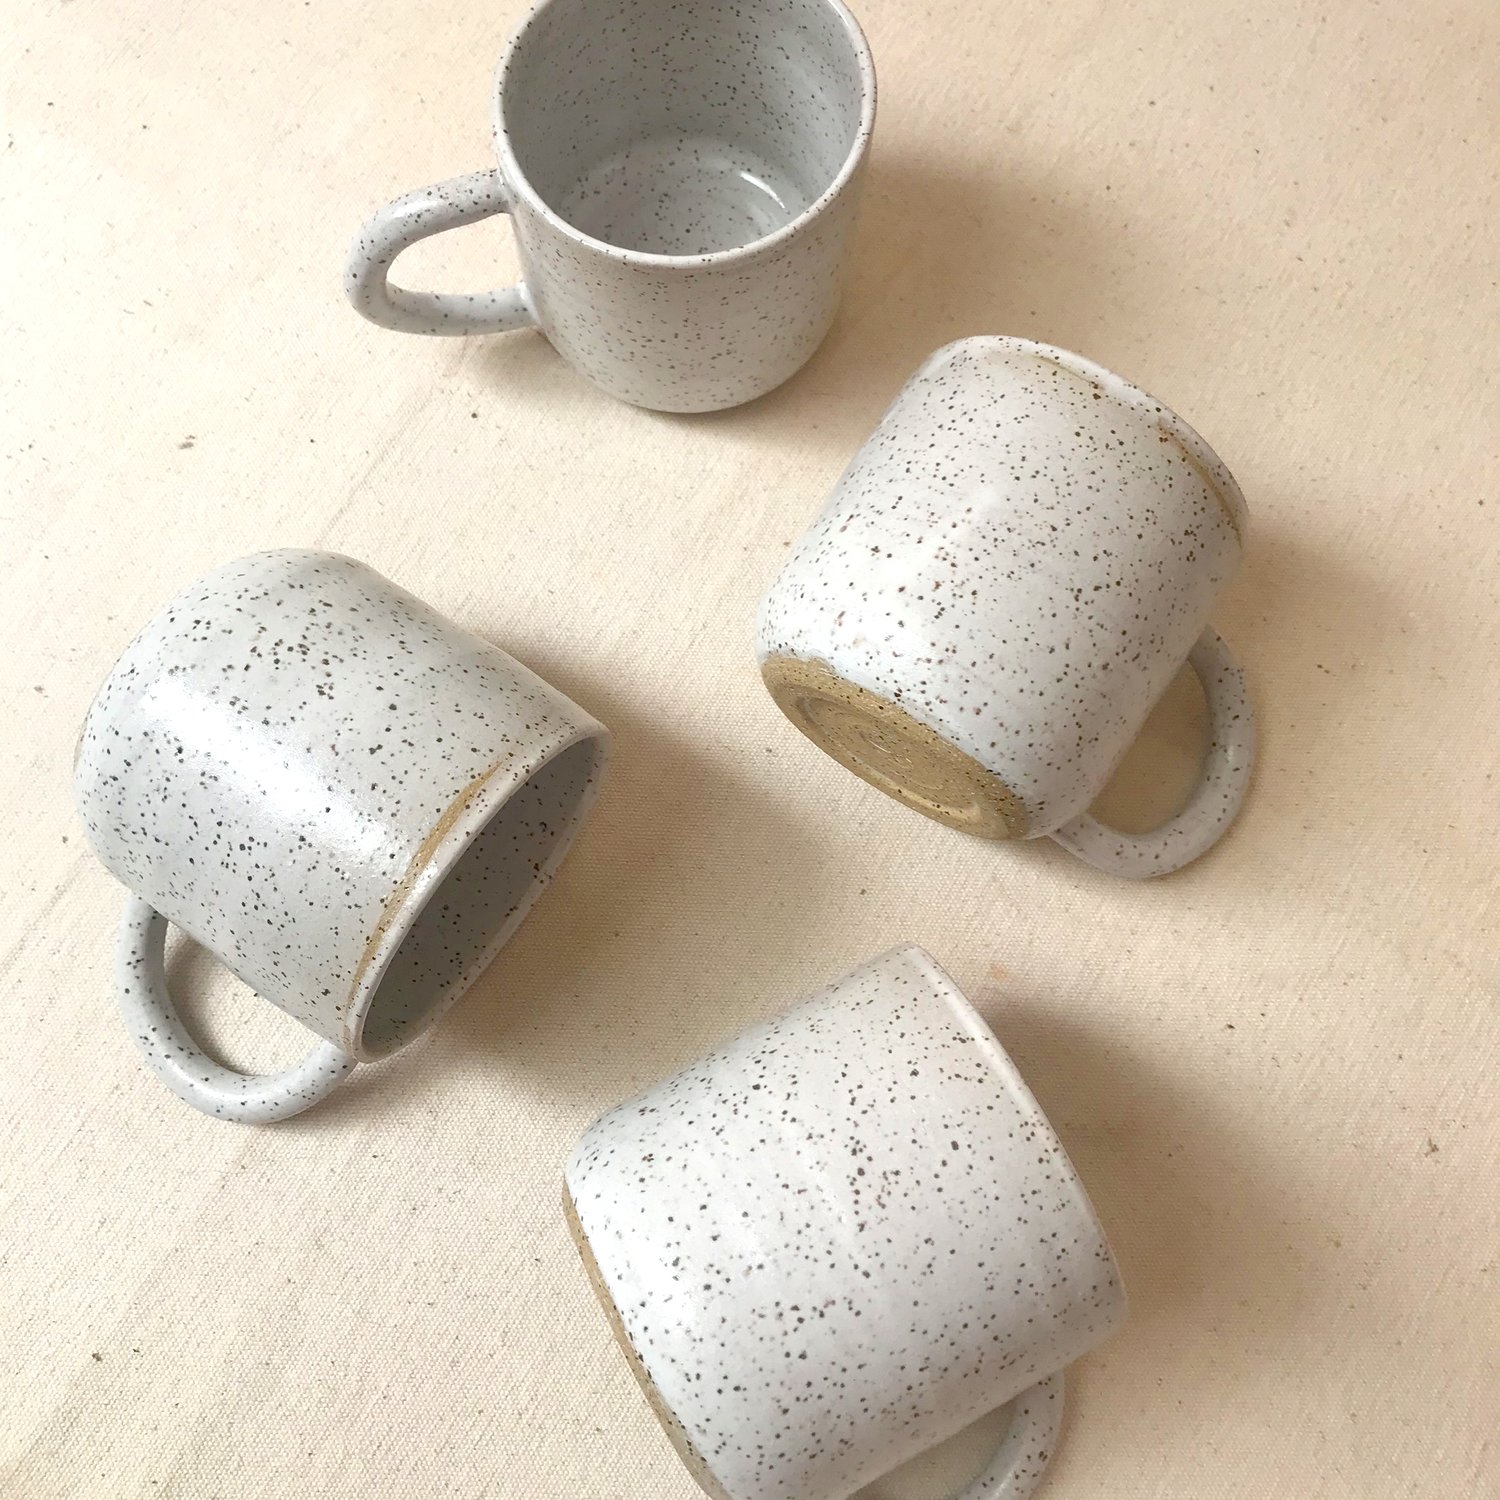 Image of simple mug